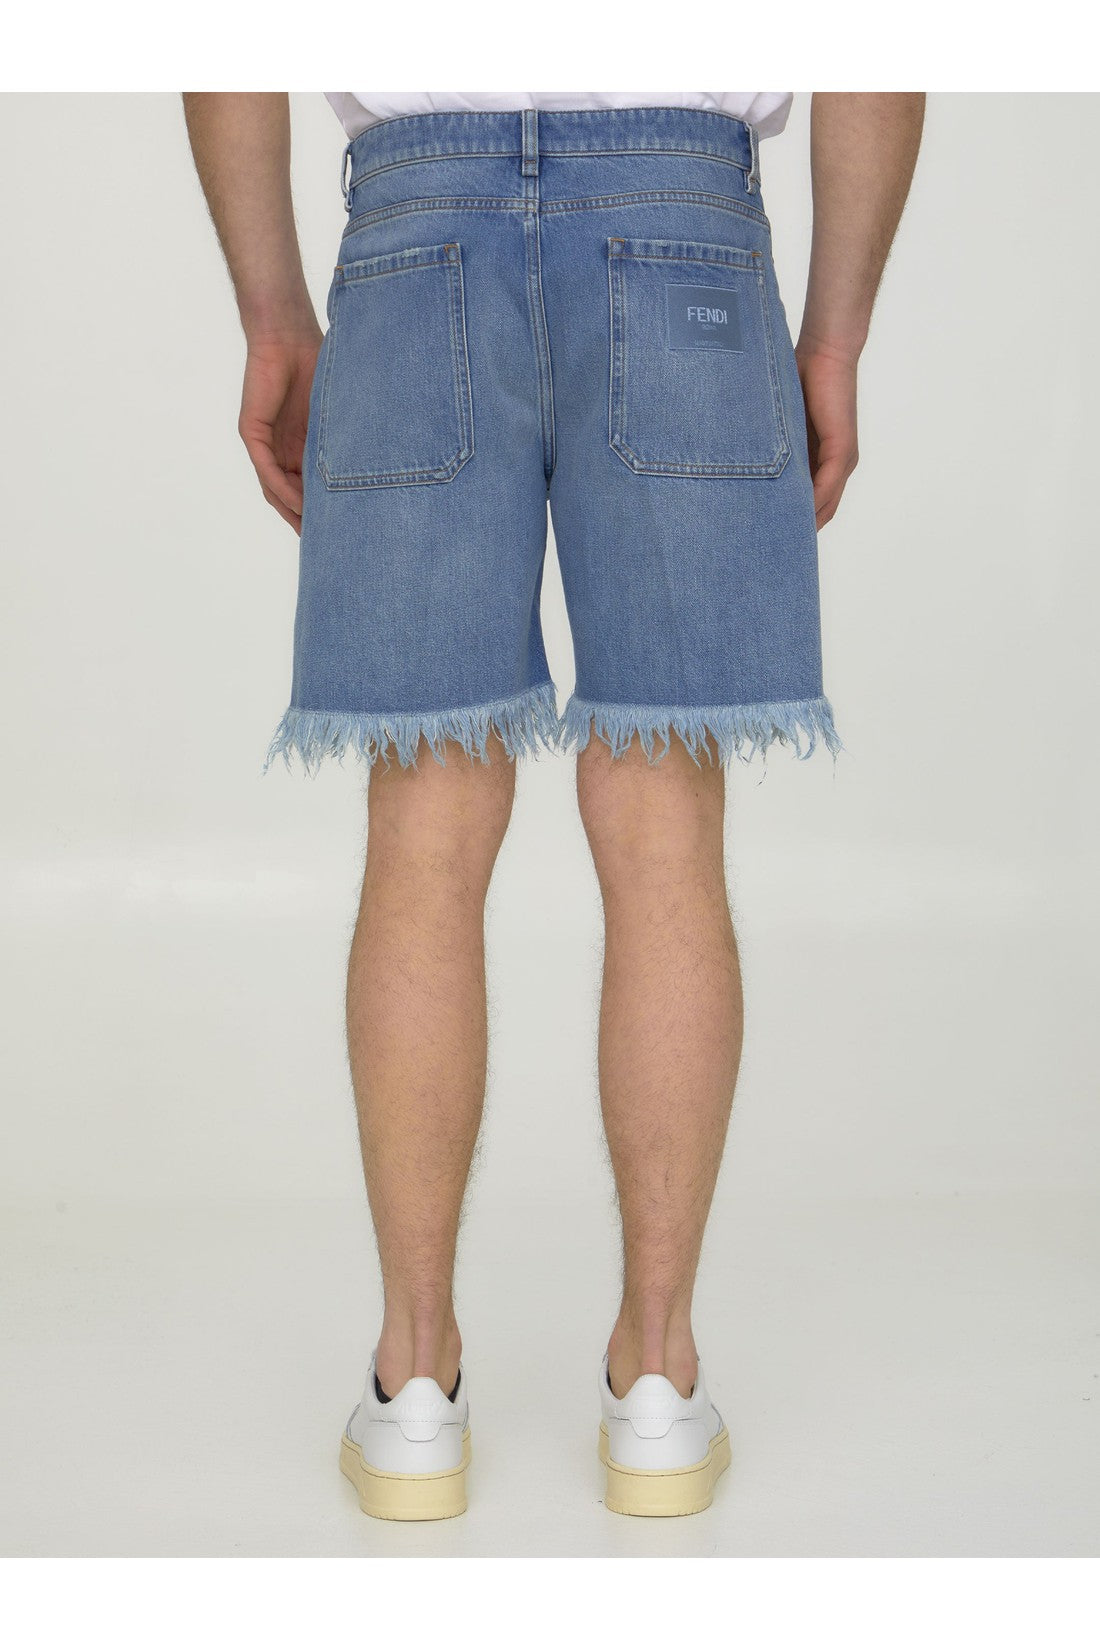 Blue denim bermuda shorts